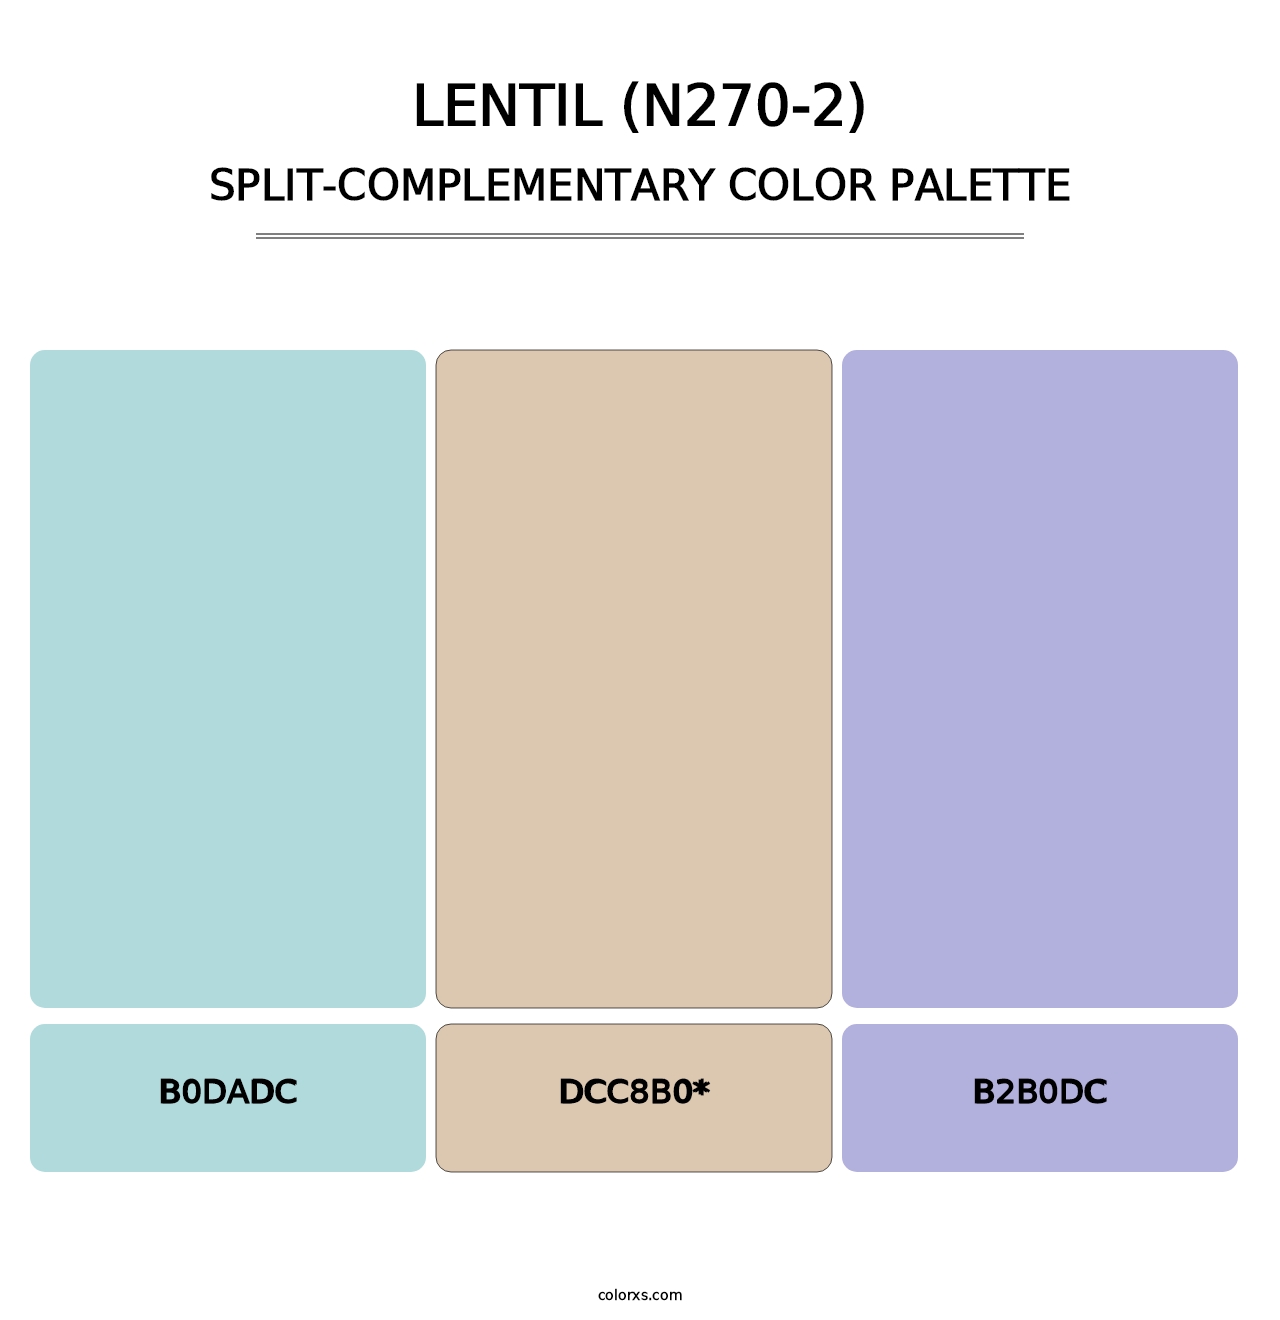 Lentil (N270-2) - Split-Complementary Color Palette